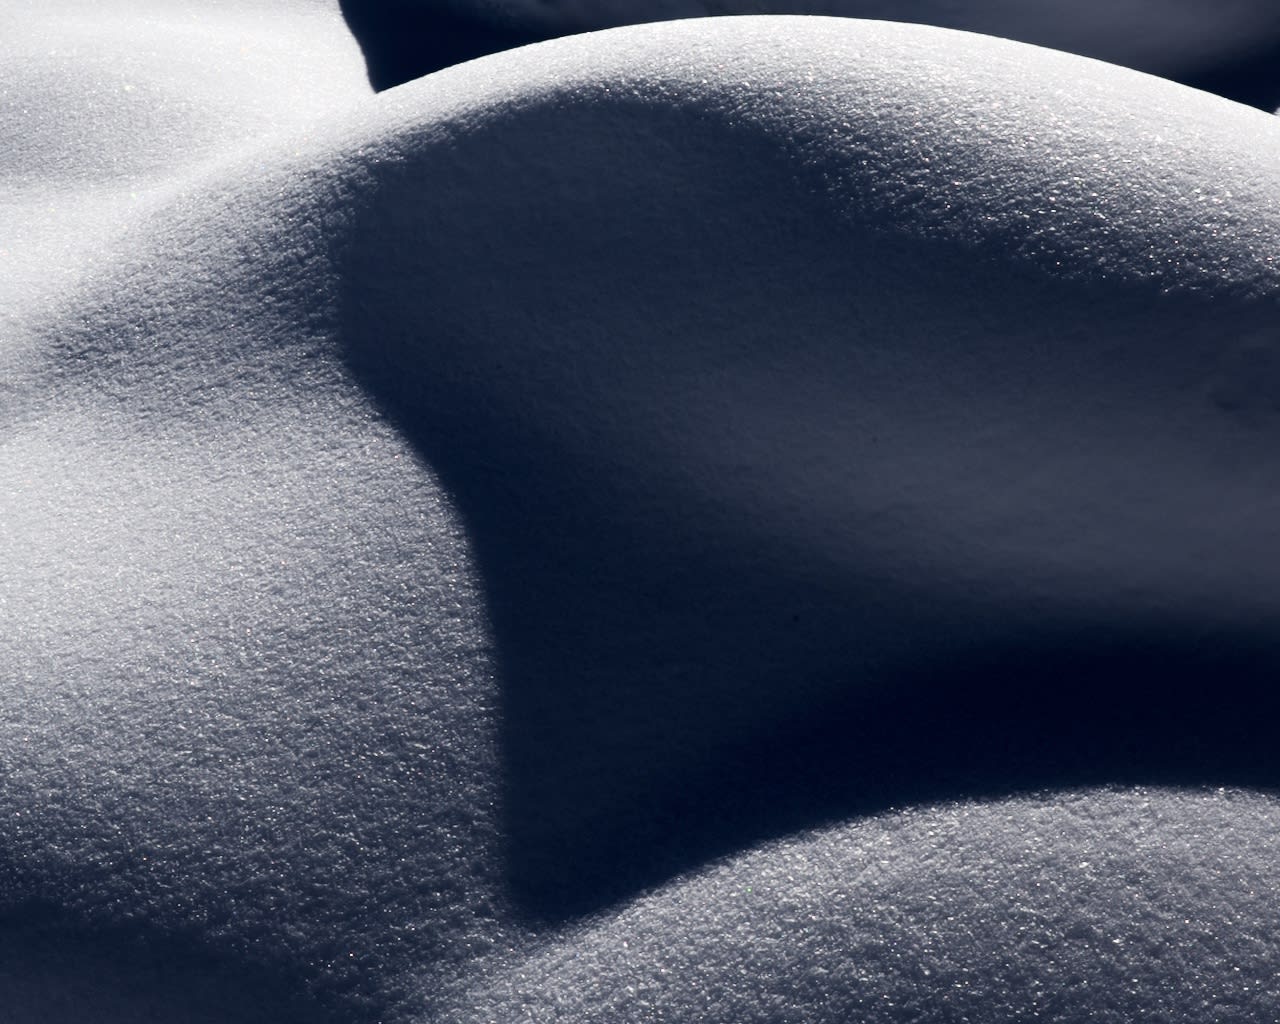 Sensuous Snow XVII (Courchevel) , 2021